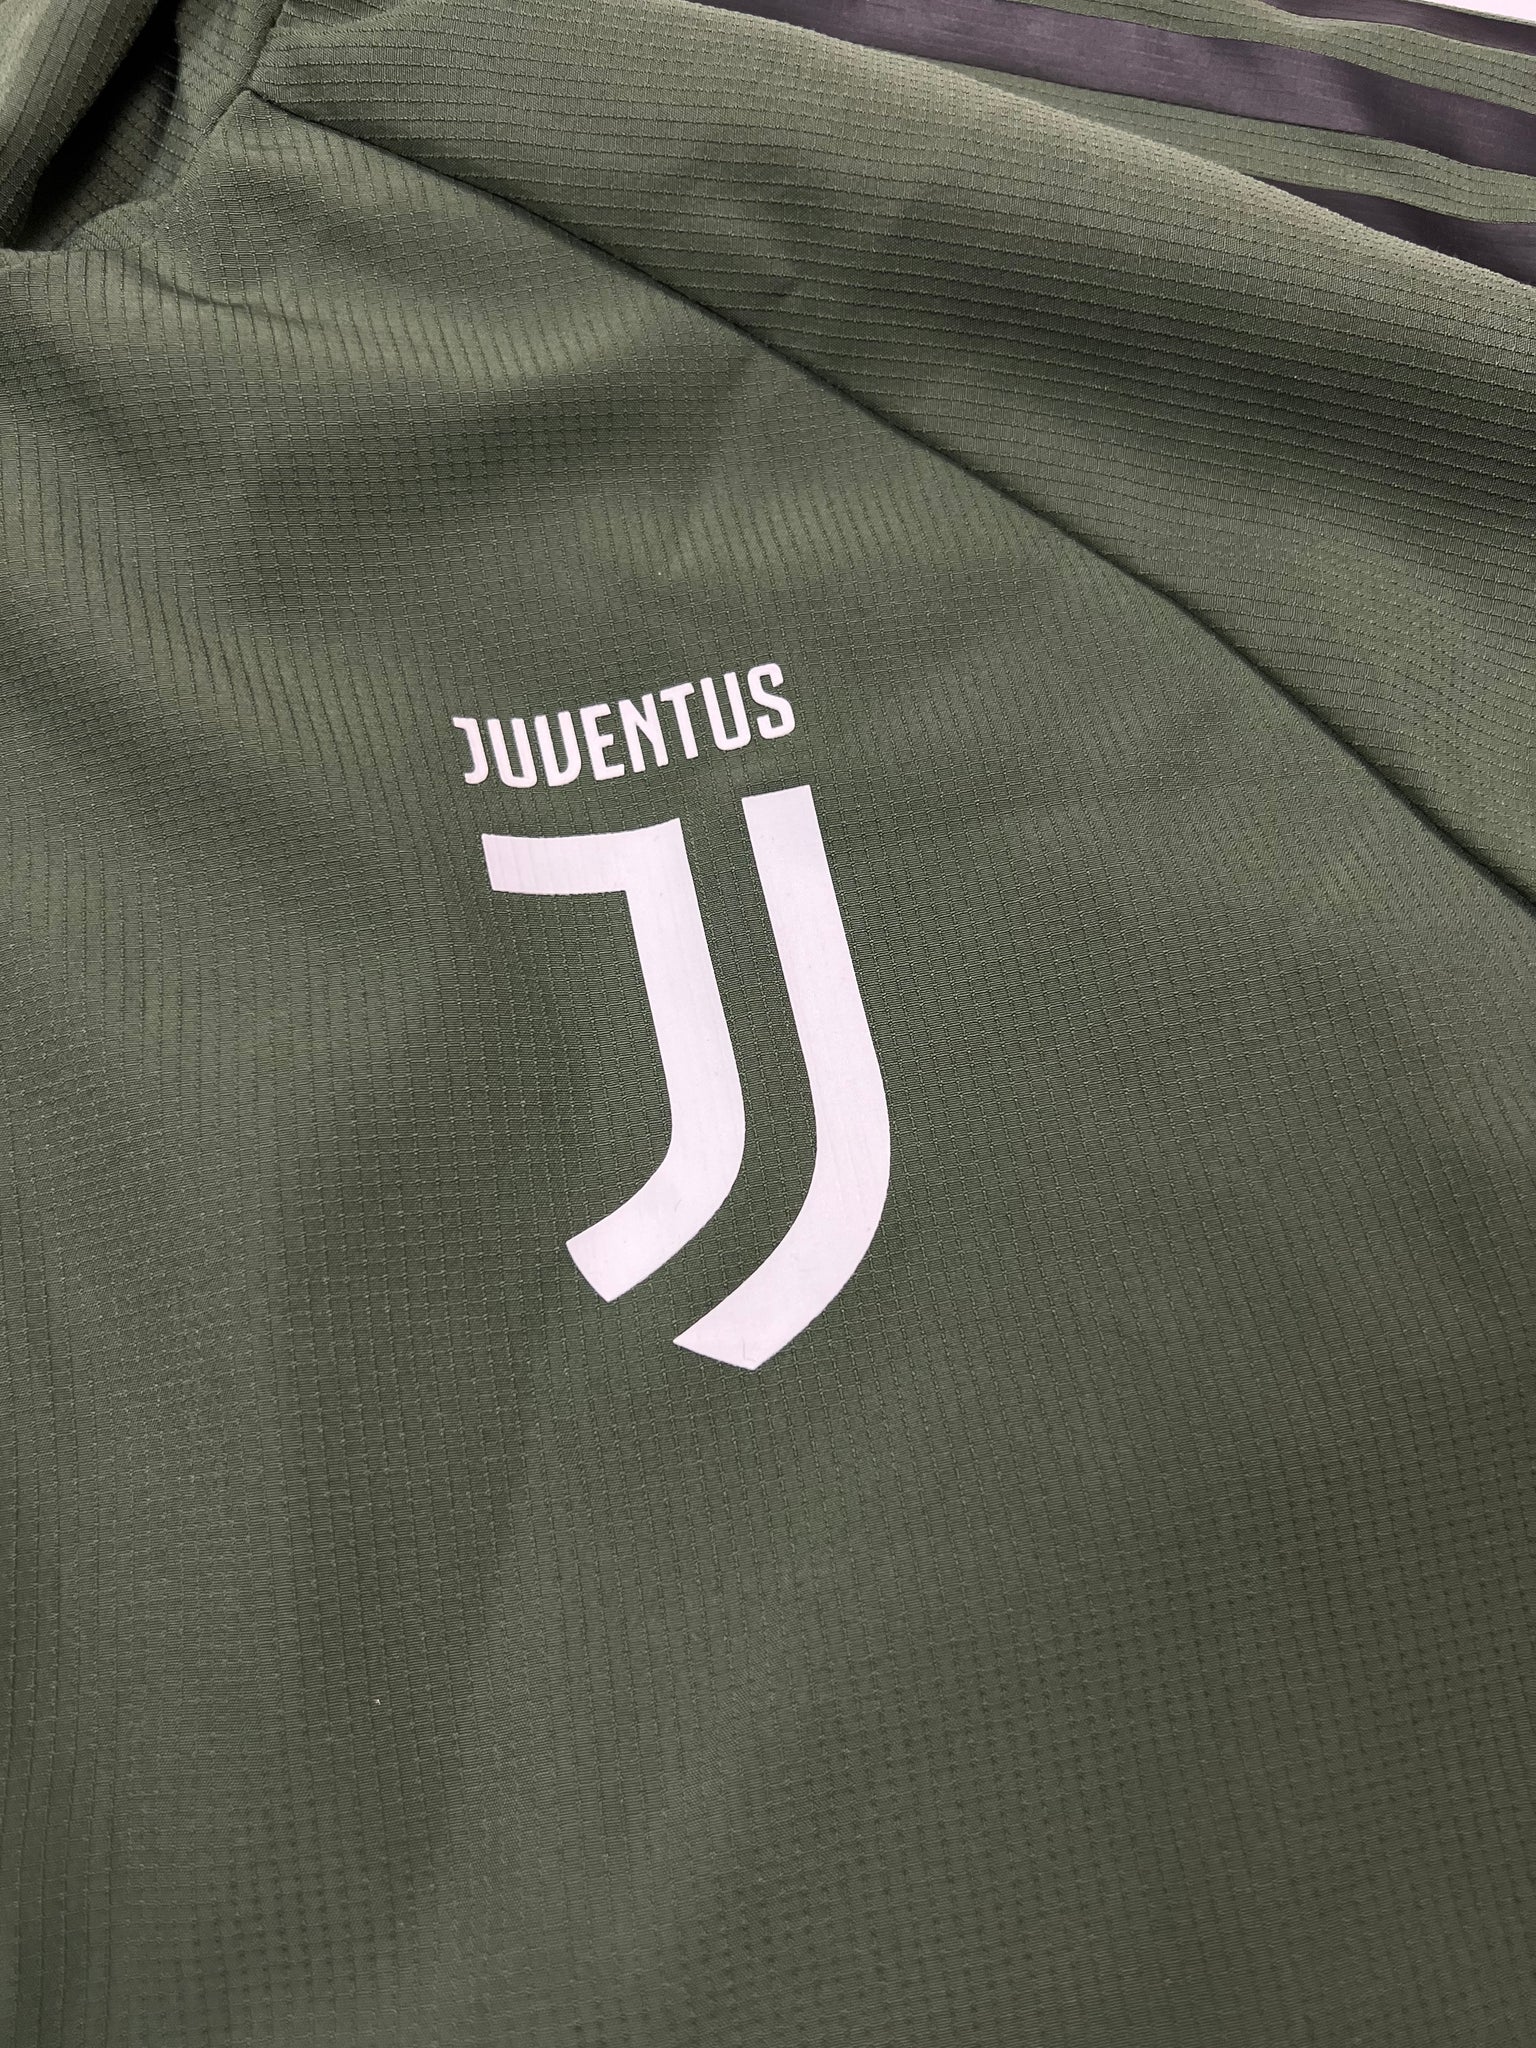 Adidas Juventus Track Jacket (M)